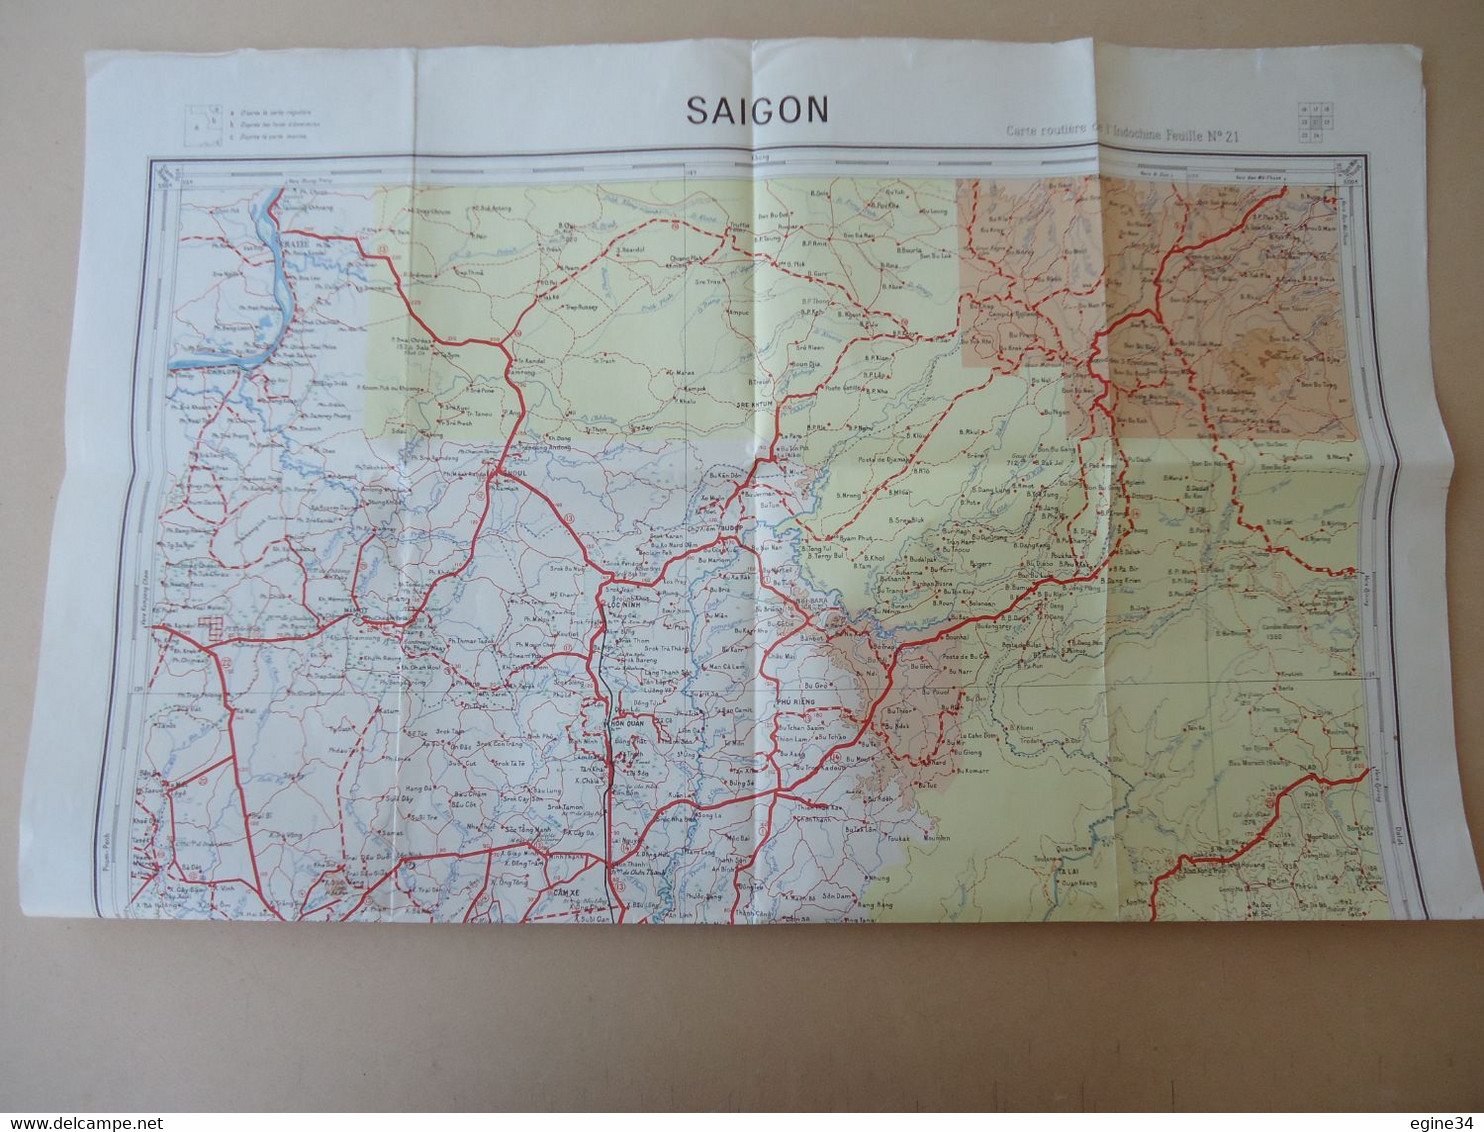 Lot 4 cartes routières de l'Indochine - SAIGON no 21 - Saigon Est no 221 -  Cho Lon Est - Cho Lon Ouest no 230 - 1950